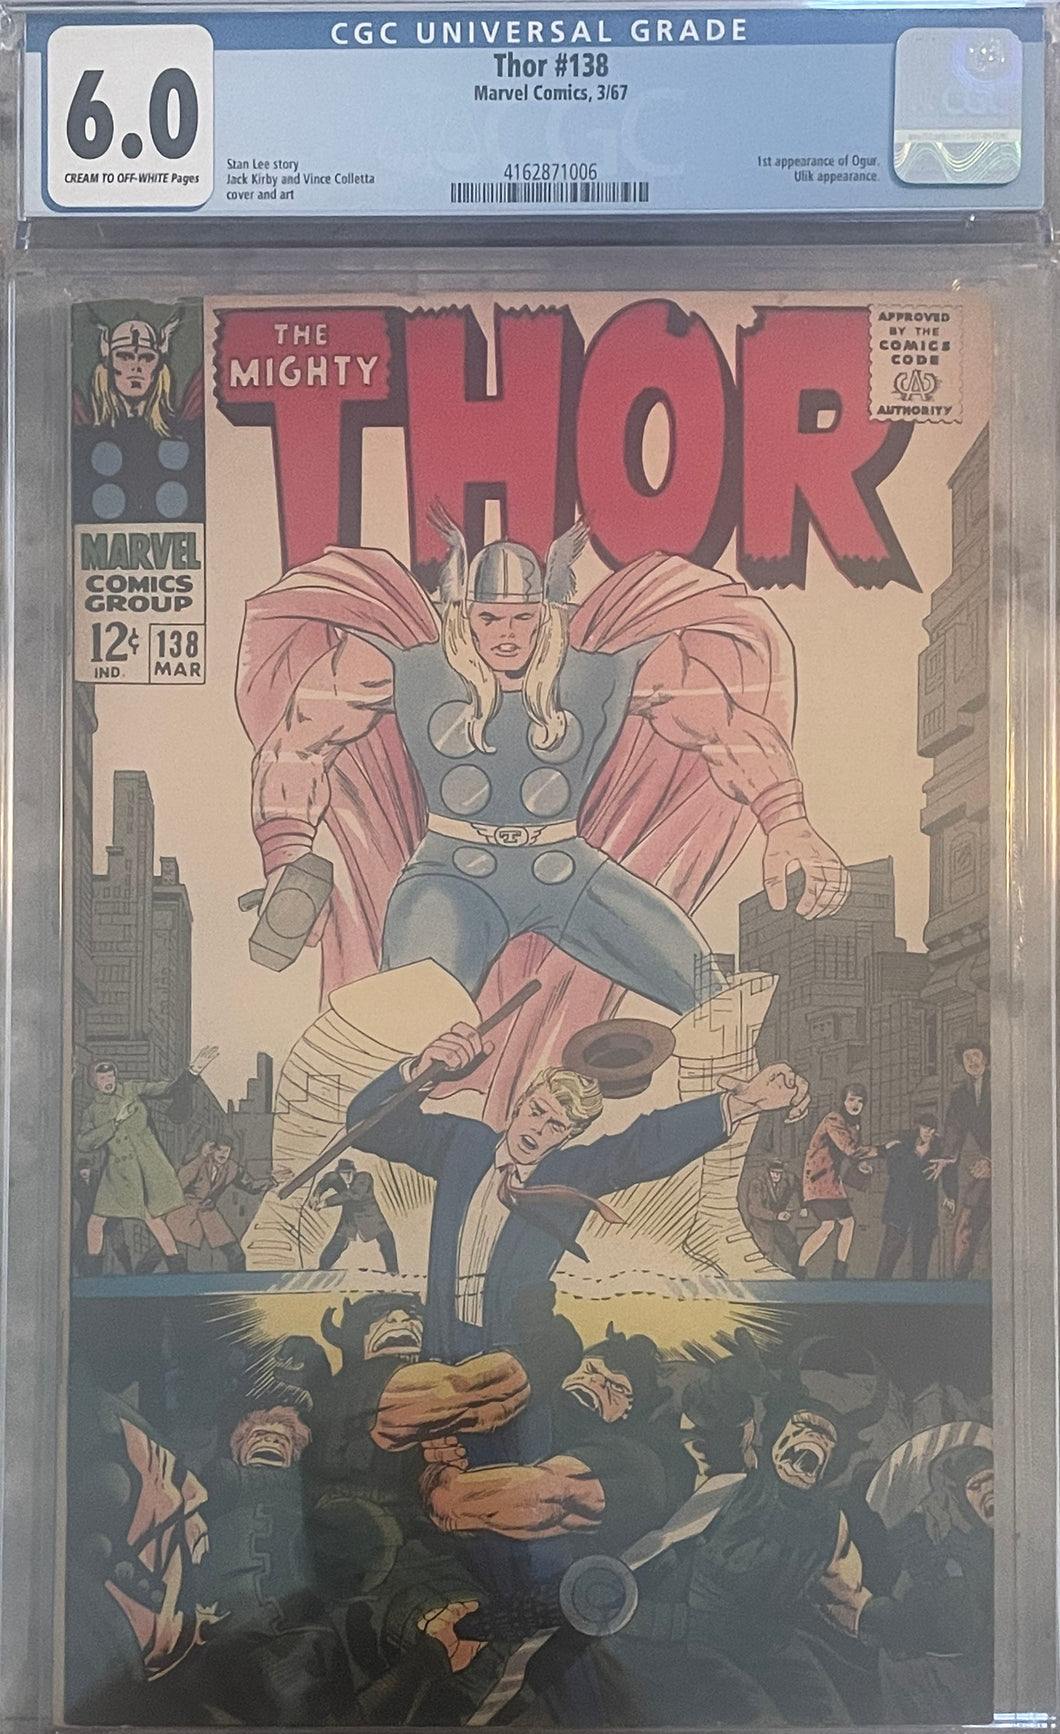 Thor #138 6.0 CGC